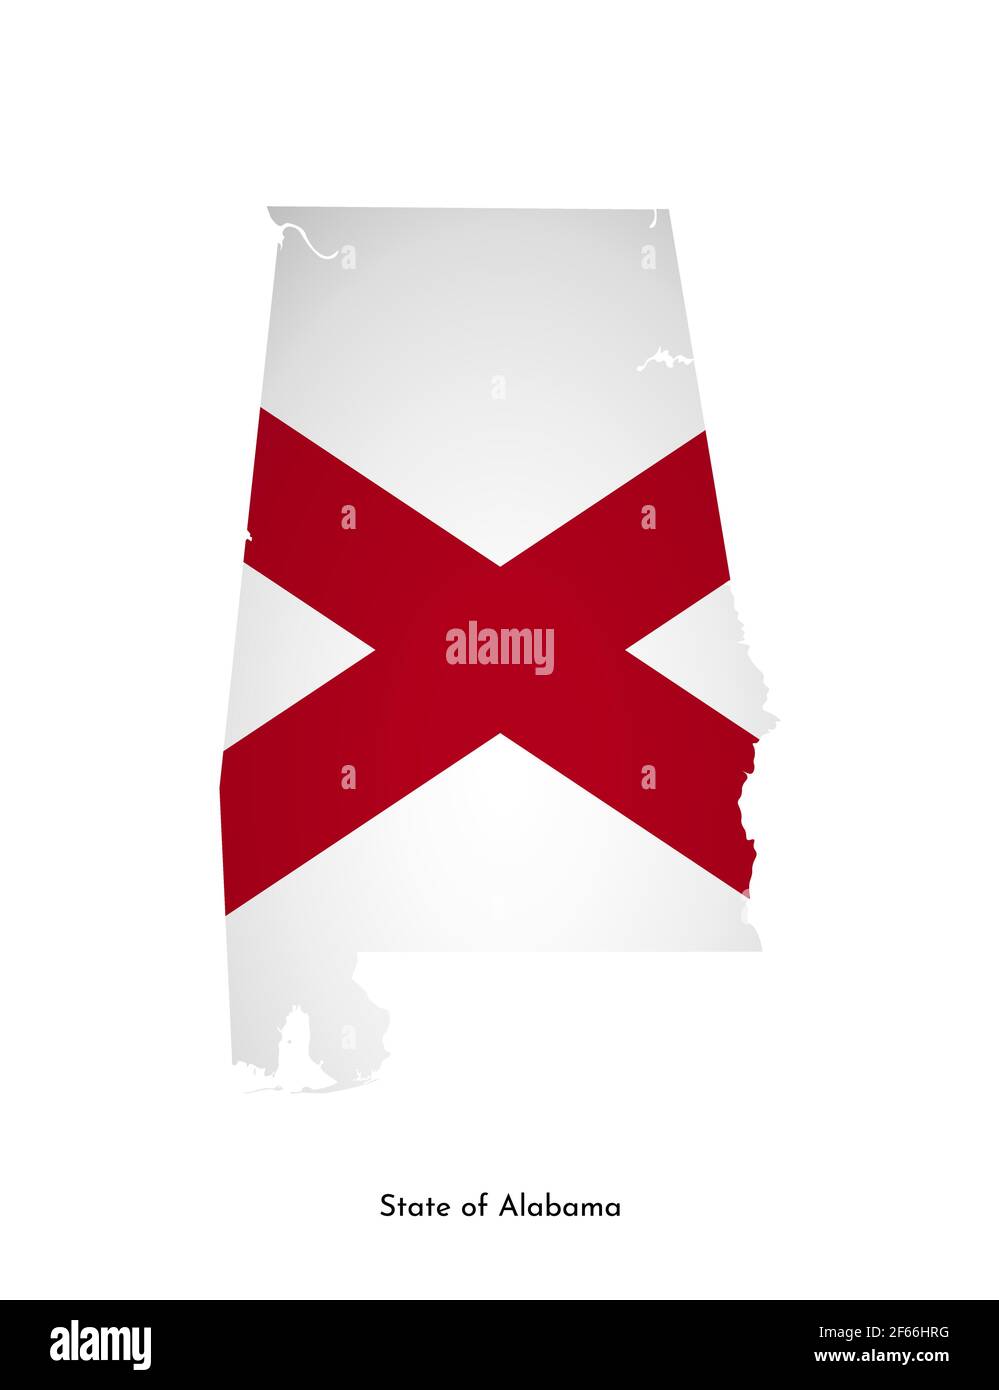 Vettore isolato illustrazione con bandiera e mappa semplificata di Alabama (Stato degli Stati Uniti). Ombra di volume sulla mappa. Sfondo bianco Illustrazione Vettoriale